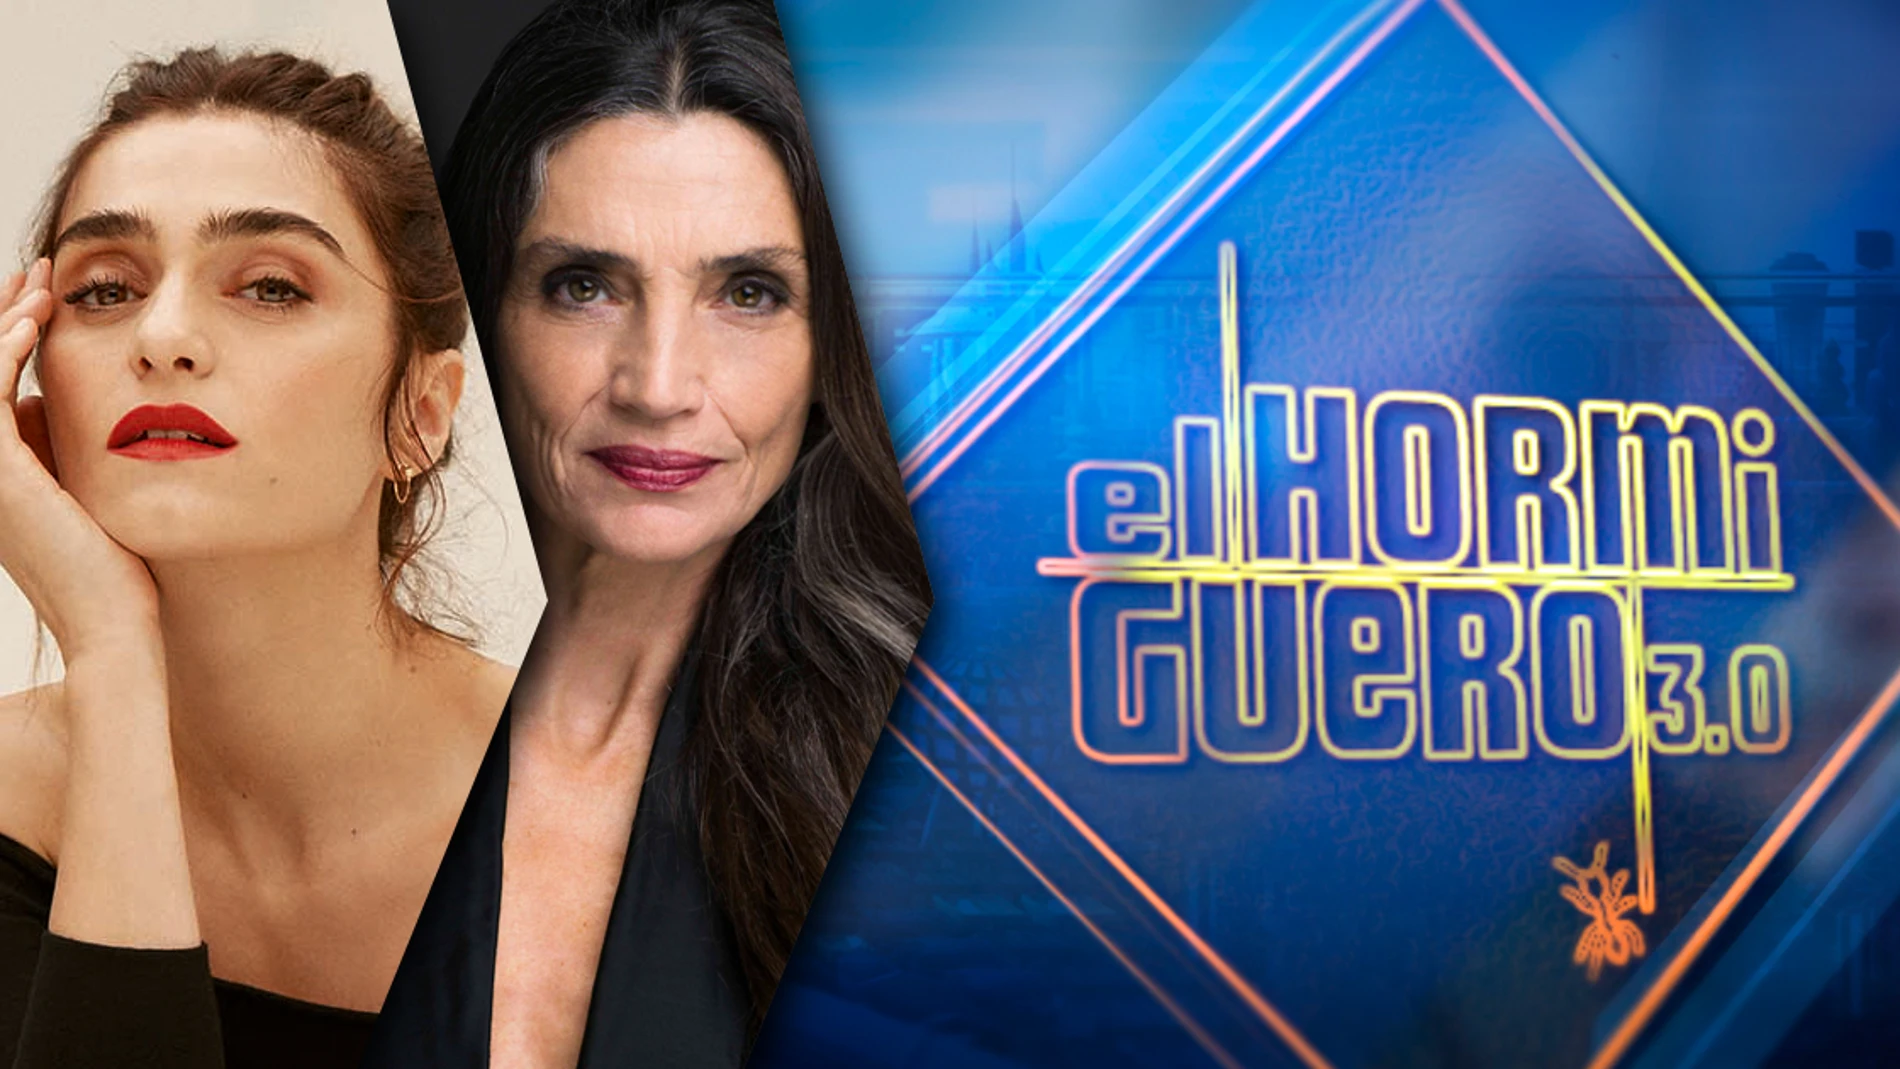 Ángela Molina y Olivia Molina visitan 'El Hormiguero 3.0' el jueves 16 de enero